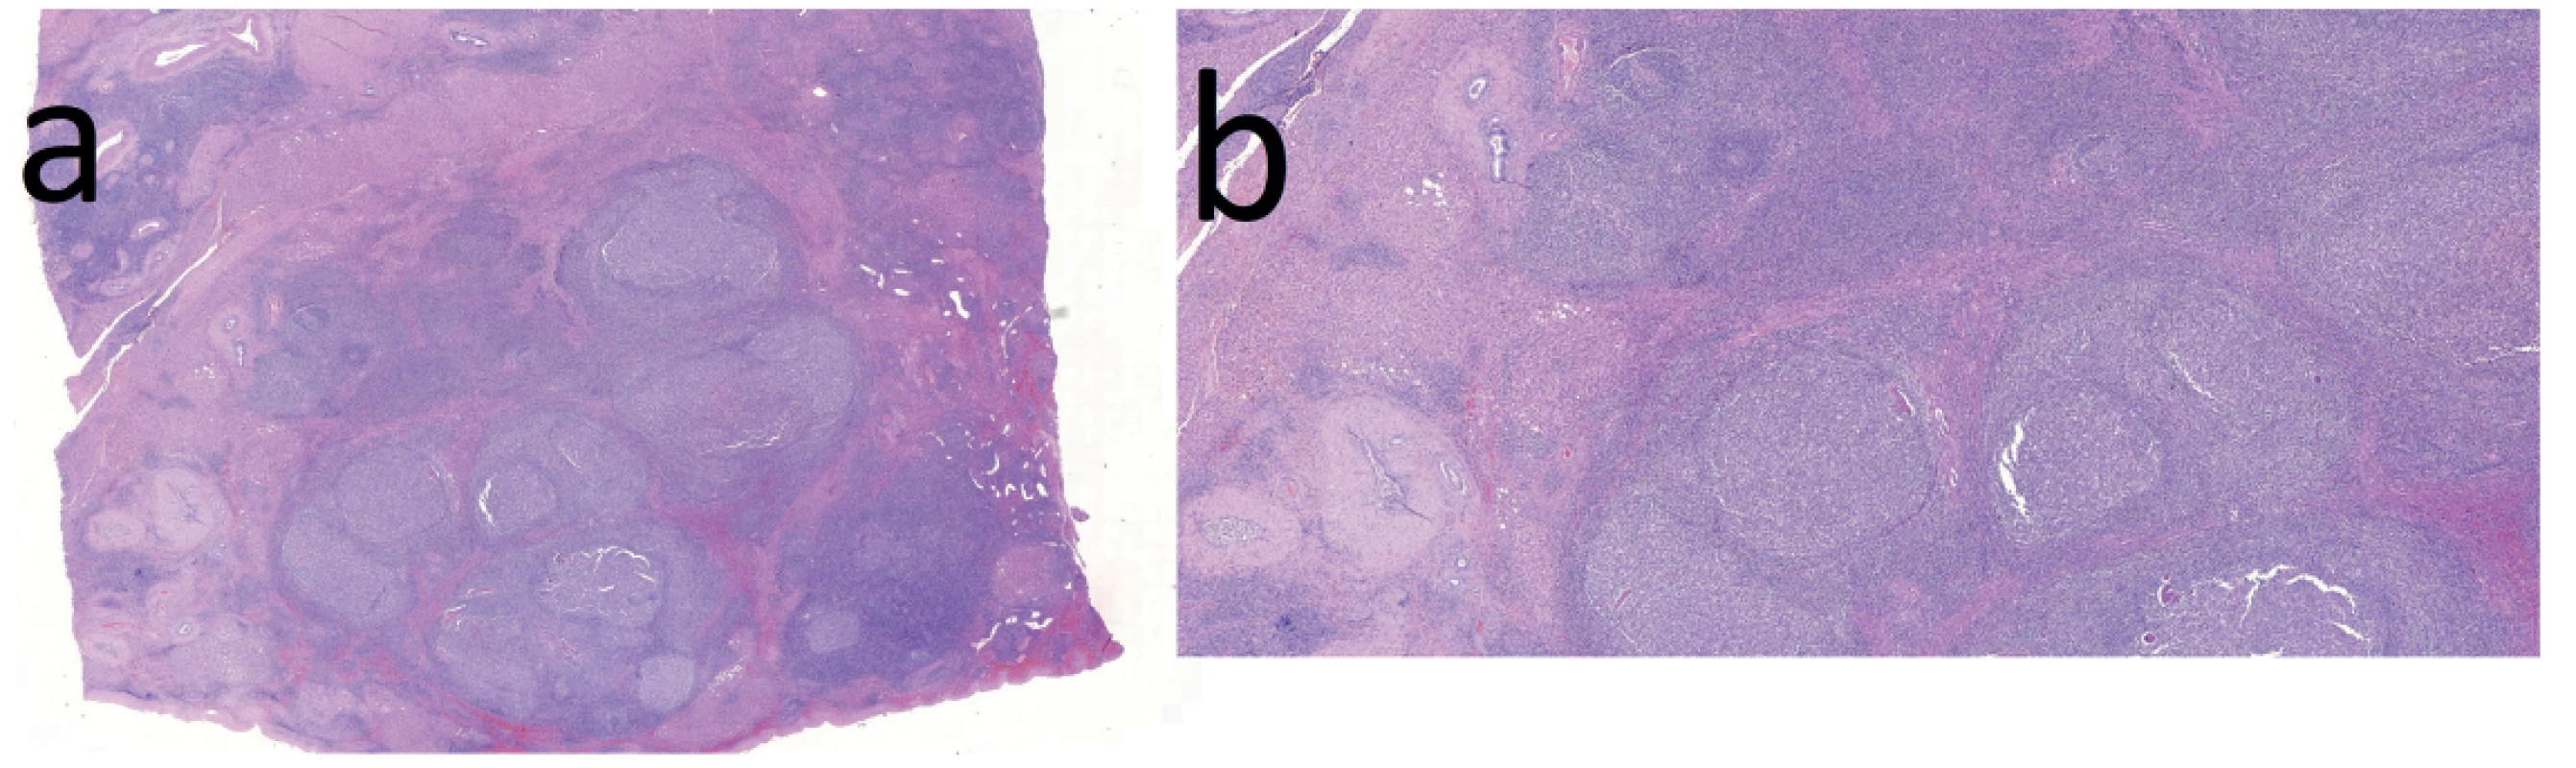 Histologické řezy v barvení Hematoxylin/Eosin: 4a − přehledné zvětšení (histotopogram). Většinu řezu zaujímá folikulární
lymfoidní hyperplazie, dále jsou patrny části jaterního parenchymu a proliferace cév a žlučovodů; 4b − při větším
zvětšení jsou patrny lymfoidní folikuly s objemnými zárodečnými centry a úzkými plášti, naznačená nodularita okolního
jaterního parenchymu se steatózou a zmnožené žlučovody<br>
Fig. 4. Histology cuts in Hematoxylin/Eosin staining: 4a − low magnification; follicular lymphoid hyperplasia is seen in
a major part of the field; the rest consists of normal liver parenchyma with vascular and bile duct proliferation; 4b − closeup;
lymphoid follicles with large germinal centres; the surrounding parenchyma is nodular and steatotic with an increase
in the number of bile ducts